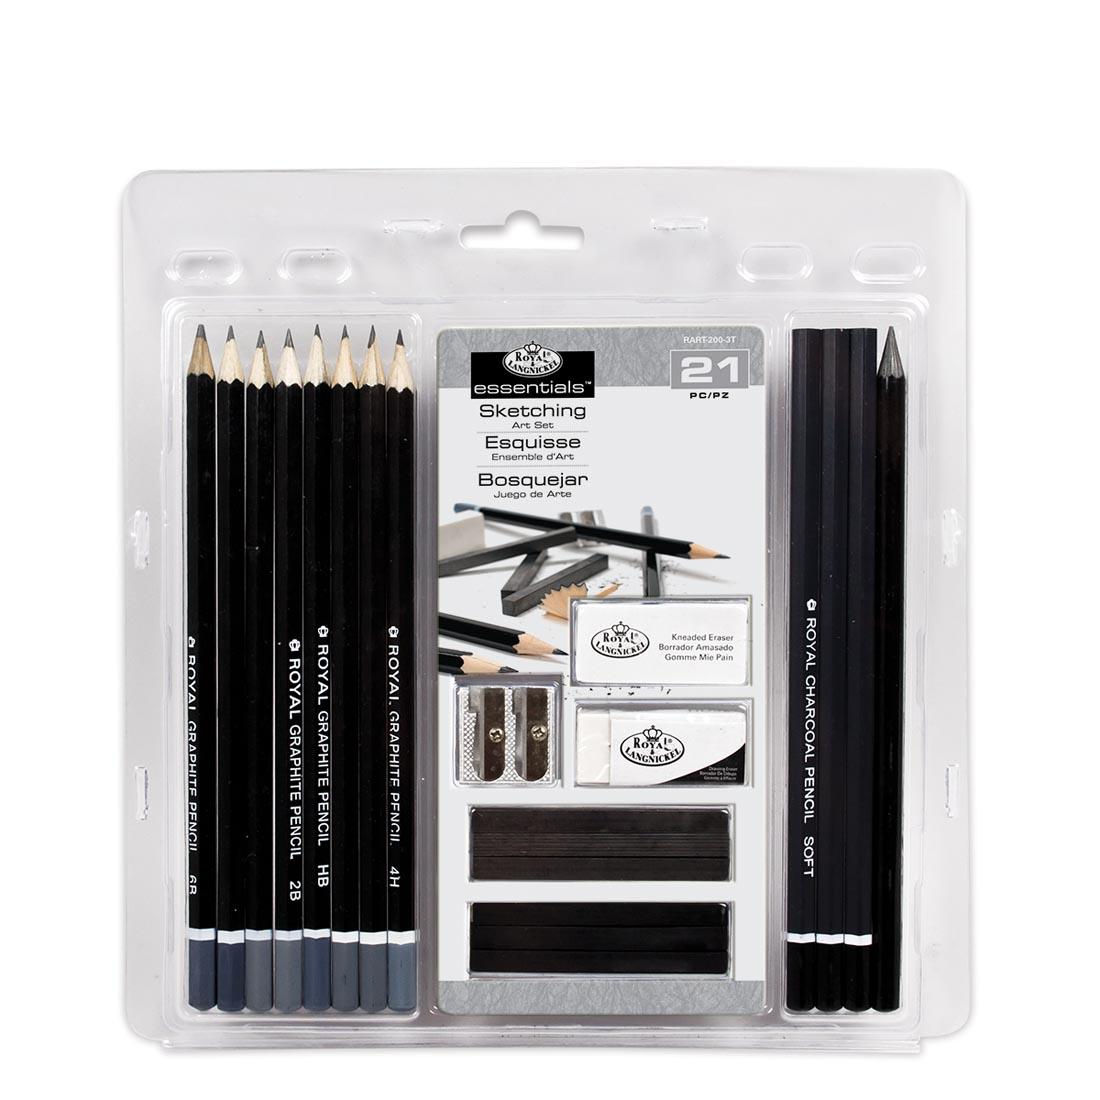 Royal & Langnickel Essentials Sketching Art Set, shown in package